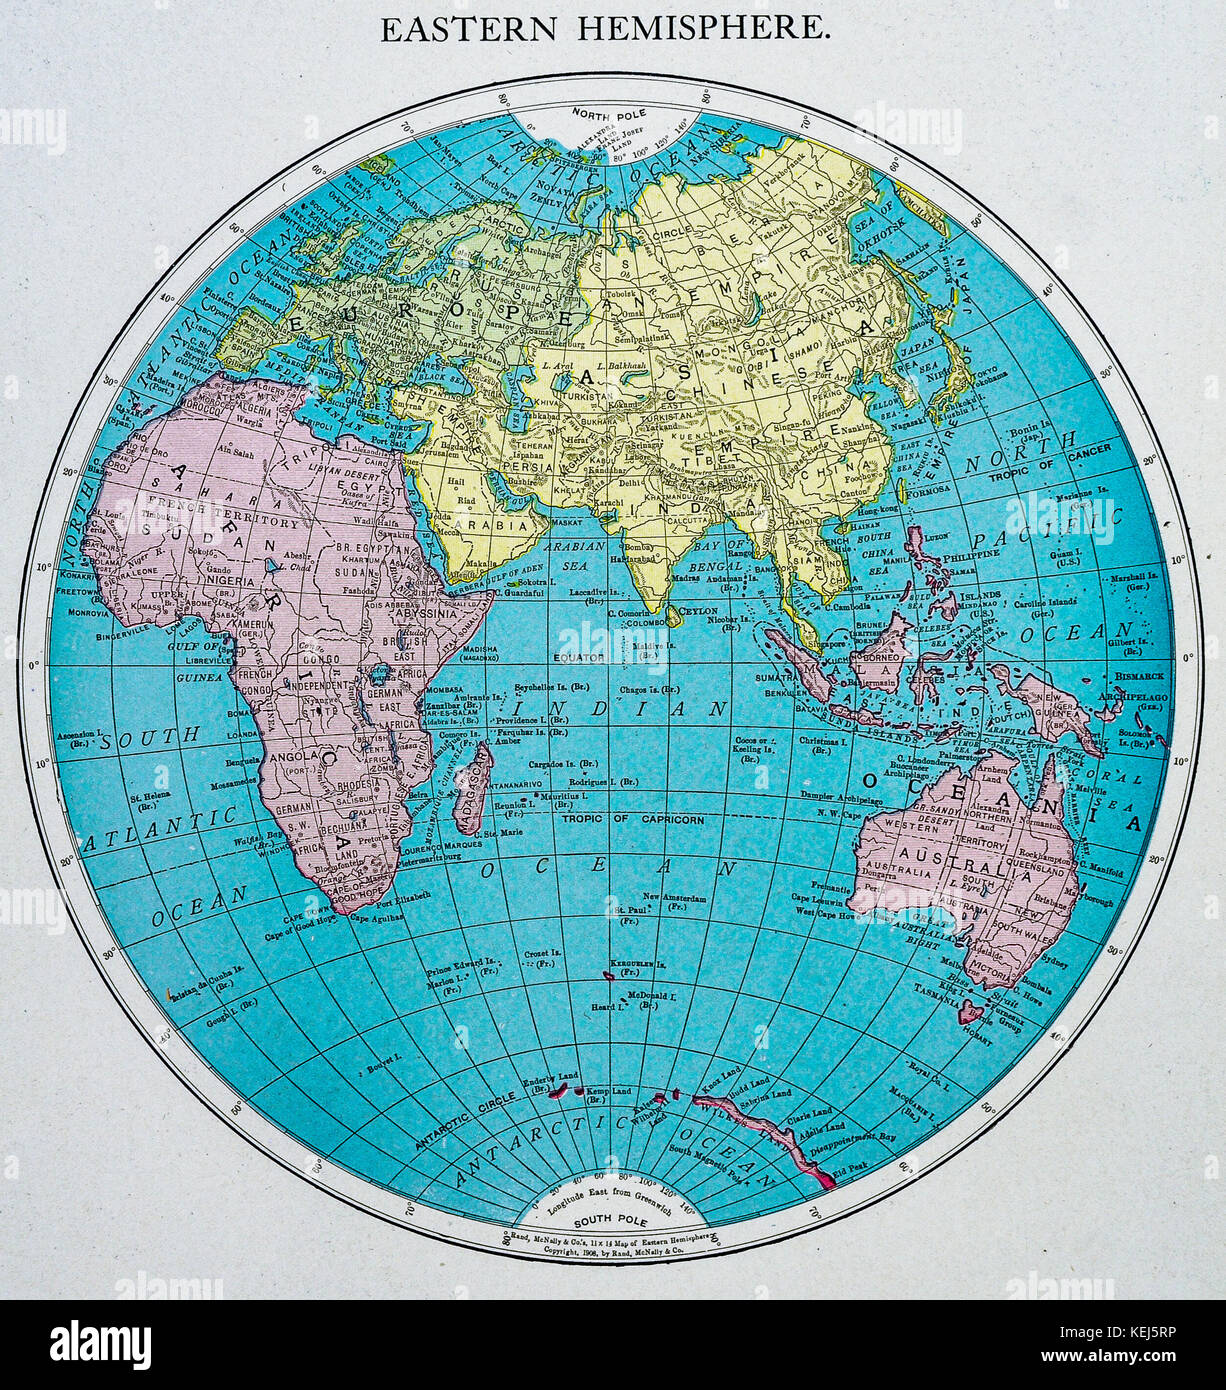 Африка восточное полушарие. Карта восточного полушария. Политическая карта восточного полушария. Глобус Восточное полушарие. Политическая карта полушарий.